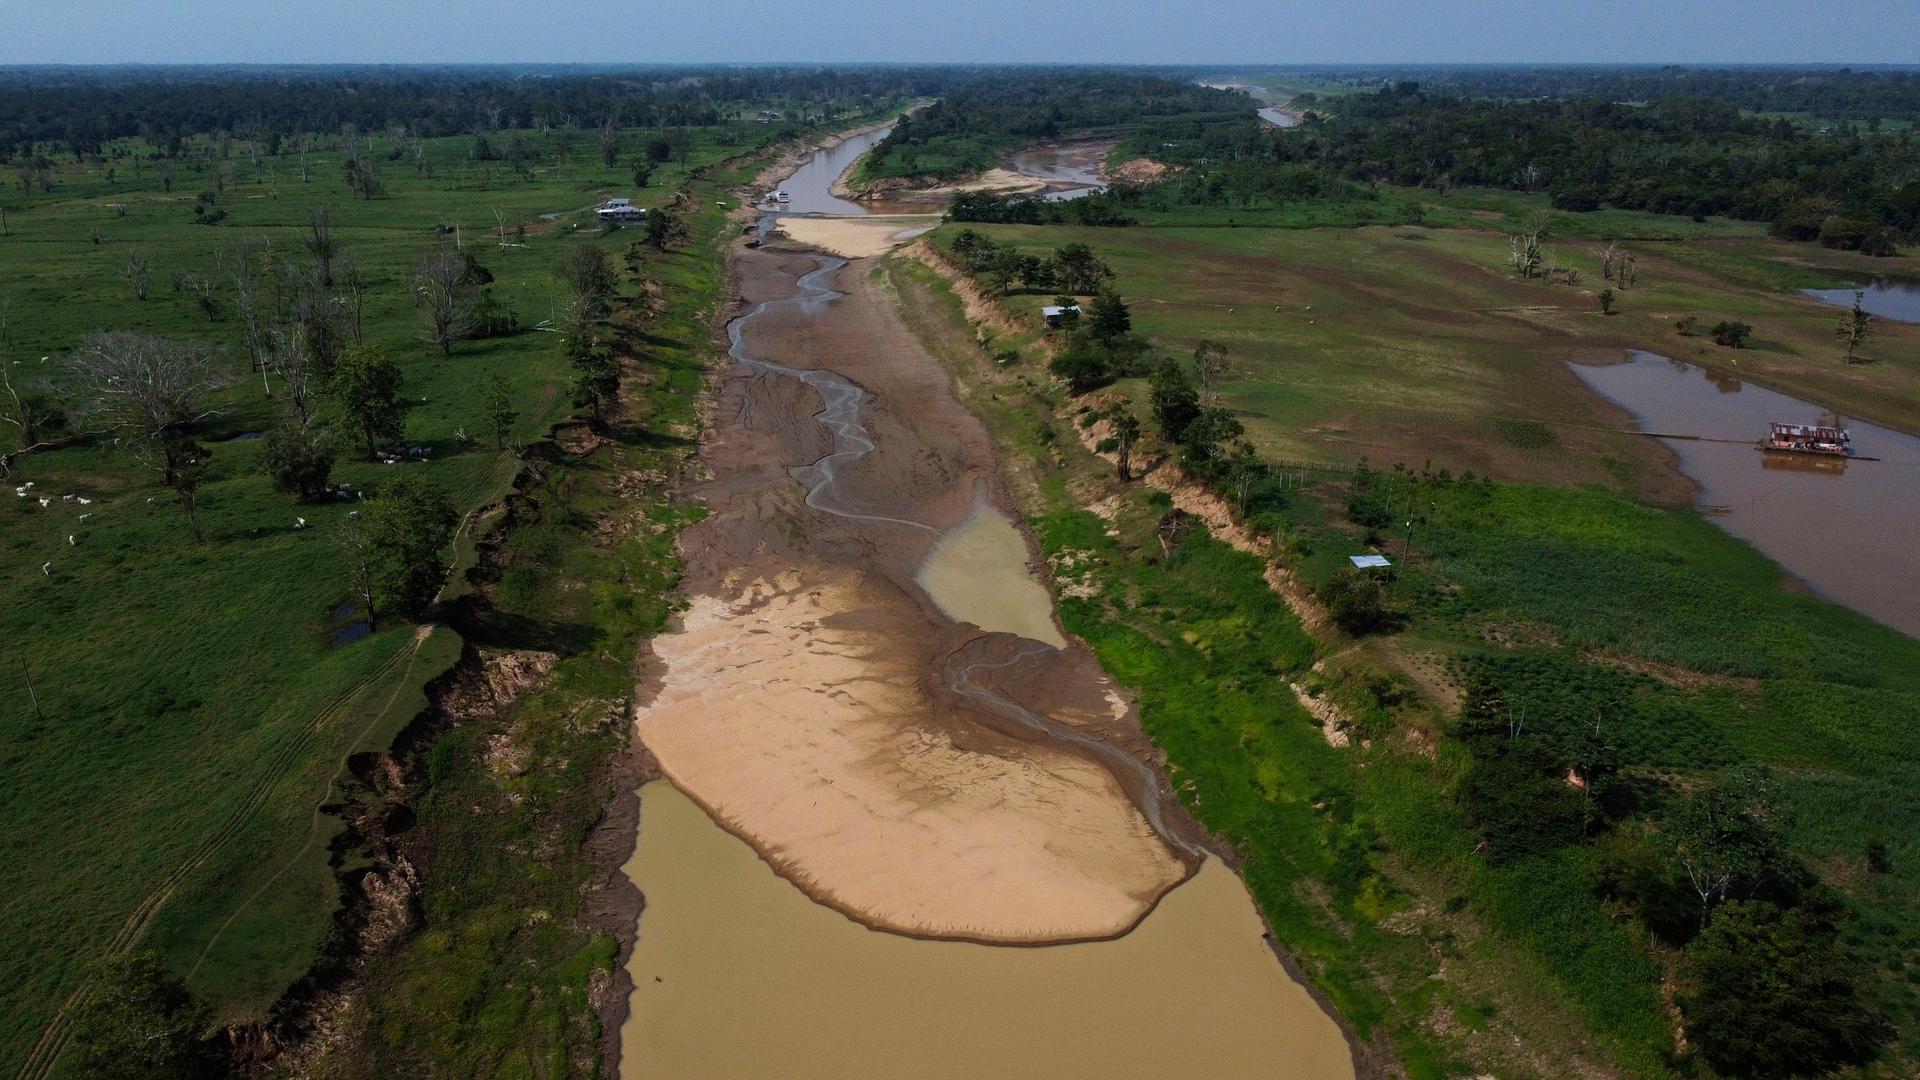 Brasilien, Manaquiri: Luftaufnahme einer trockenen Strecke des Solimoes-Flusses in einem ländlichen Gebiet des Bundesstaates Amazonas.